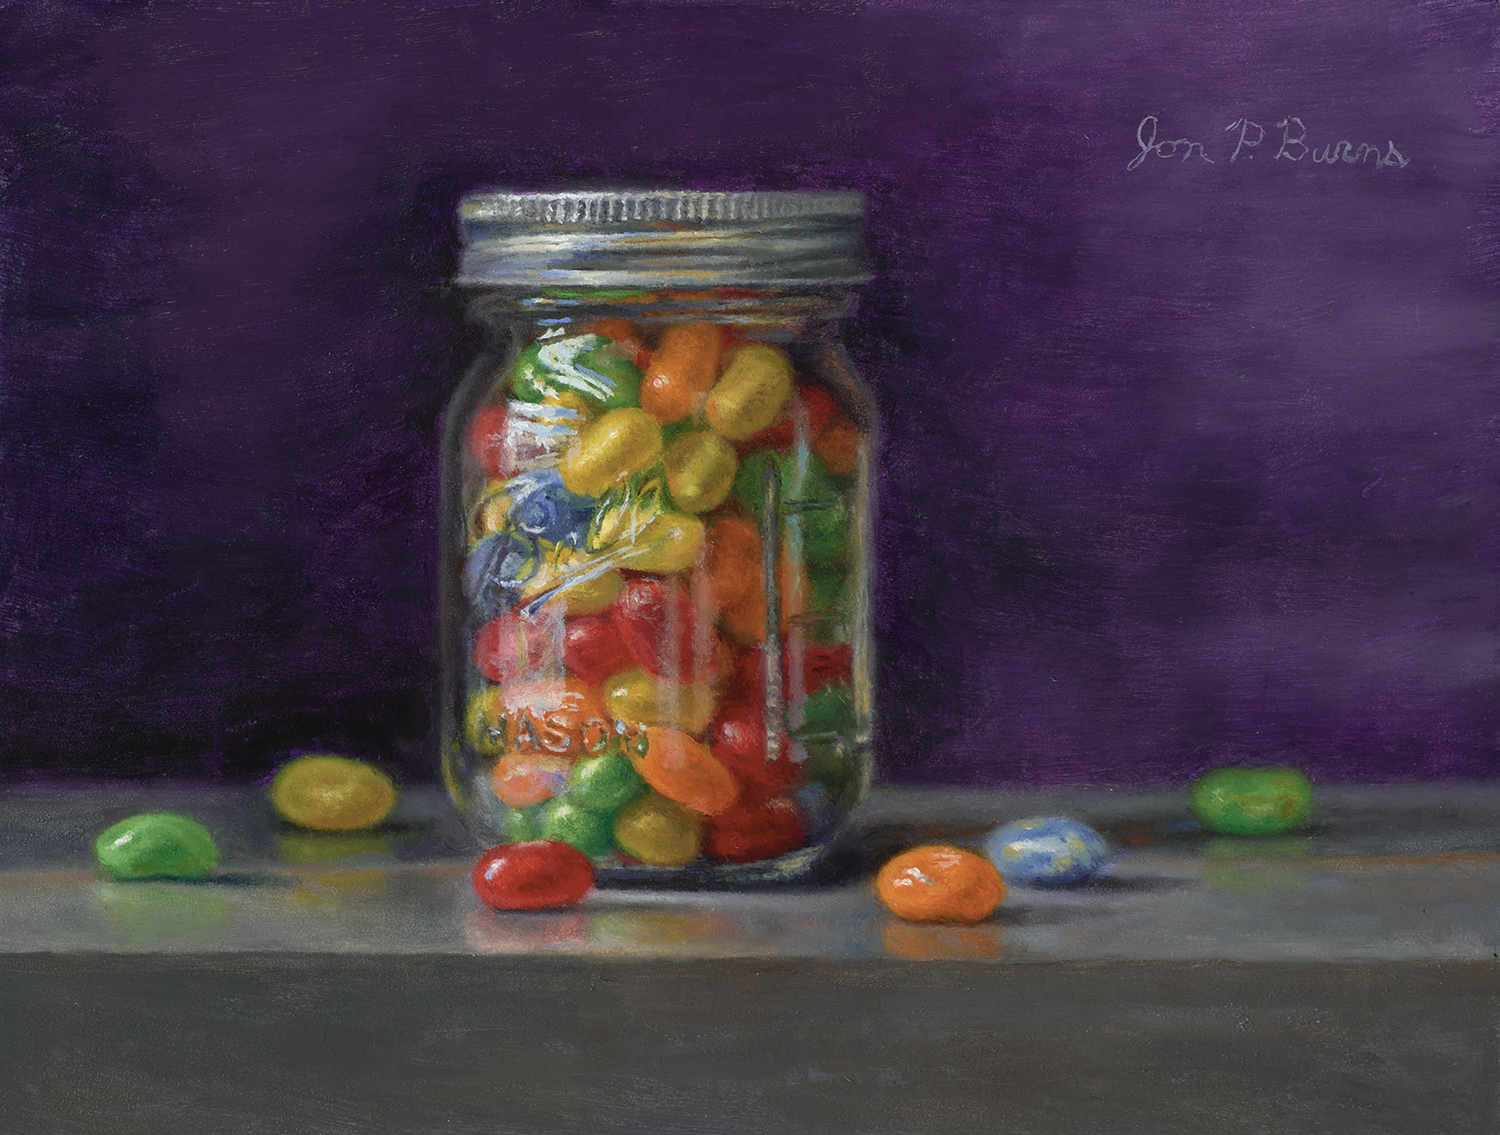 Sour Jelly Beans - Jon Burns